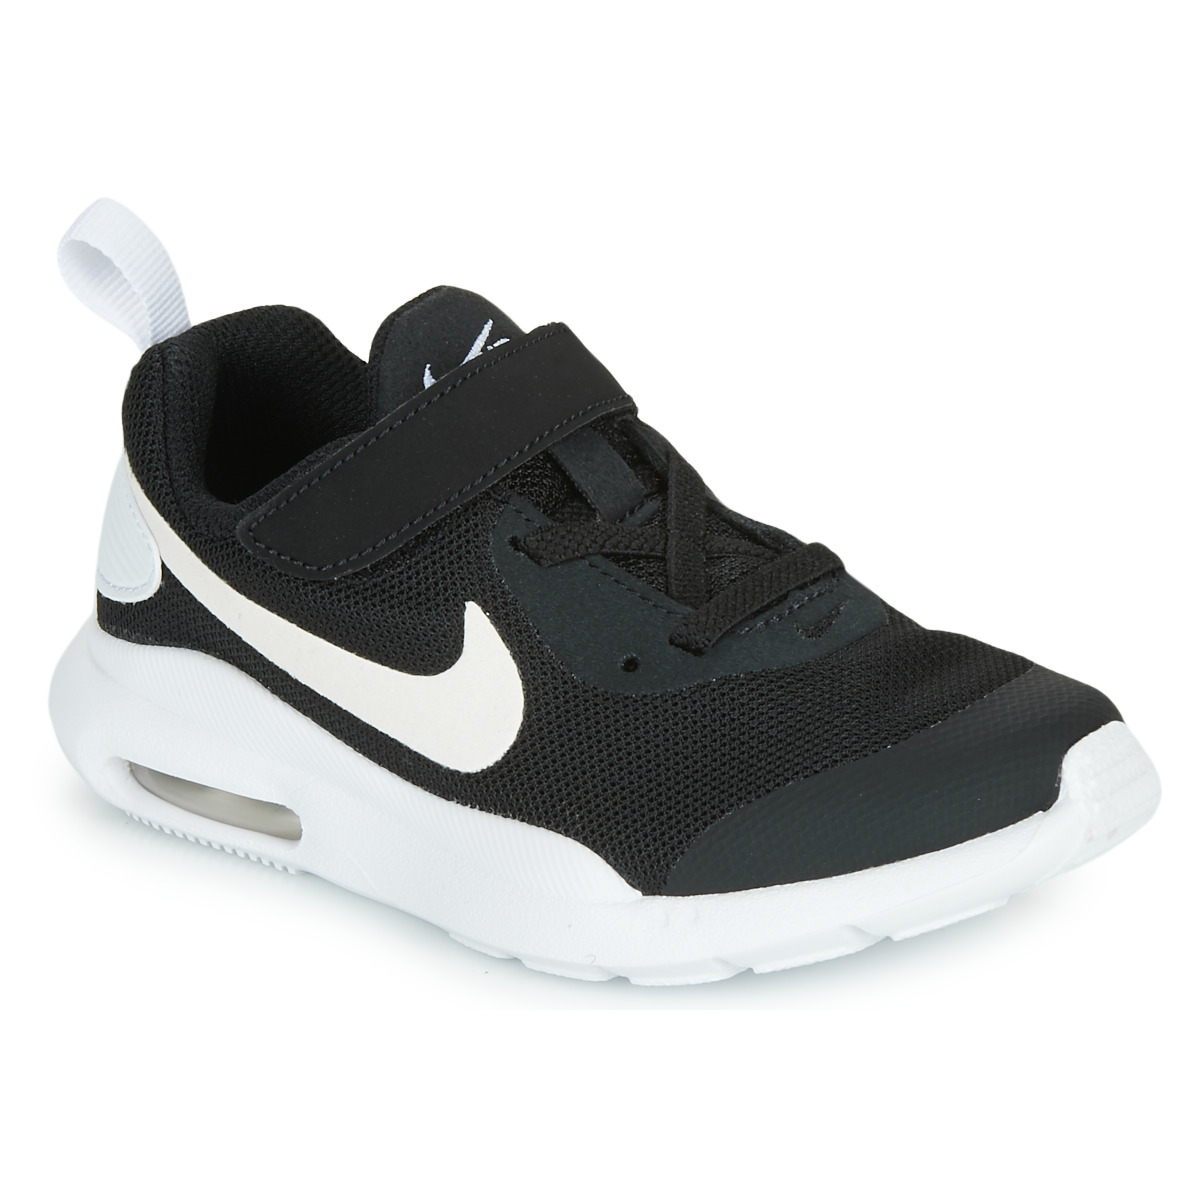 Schoenen Kinderen Lage sneakers Nike AIR MAX OKETO PS Zwart / Wit